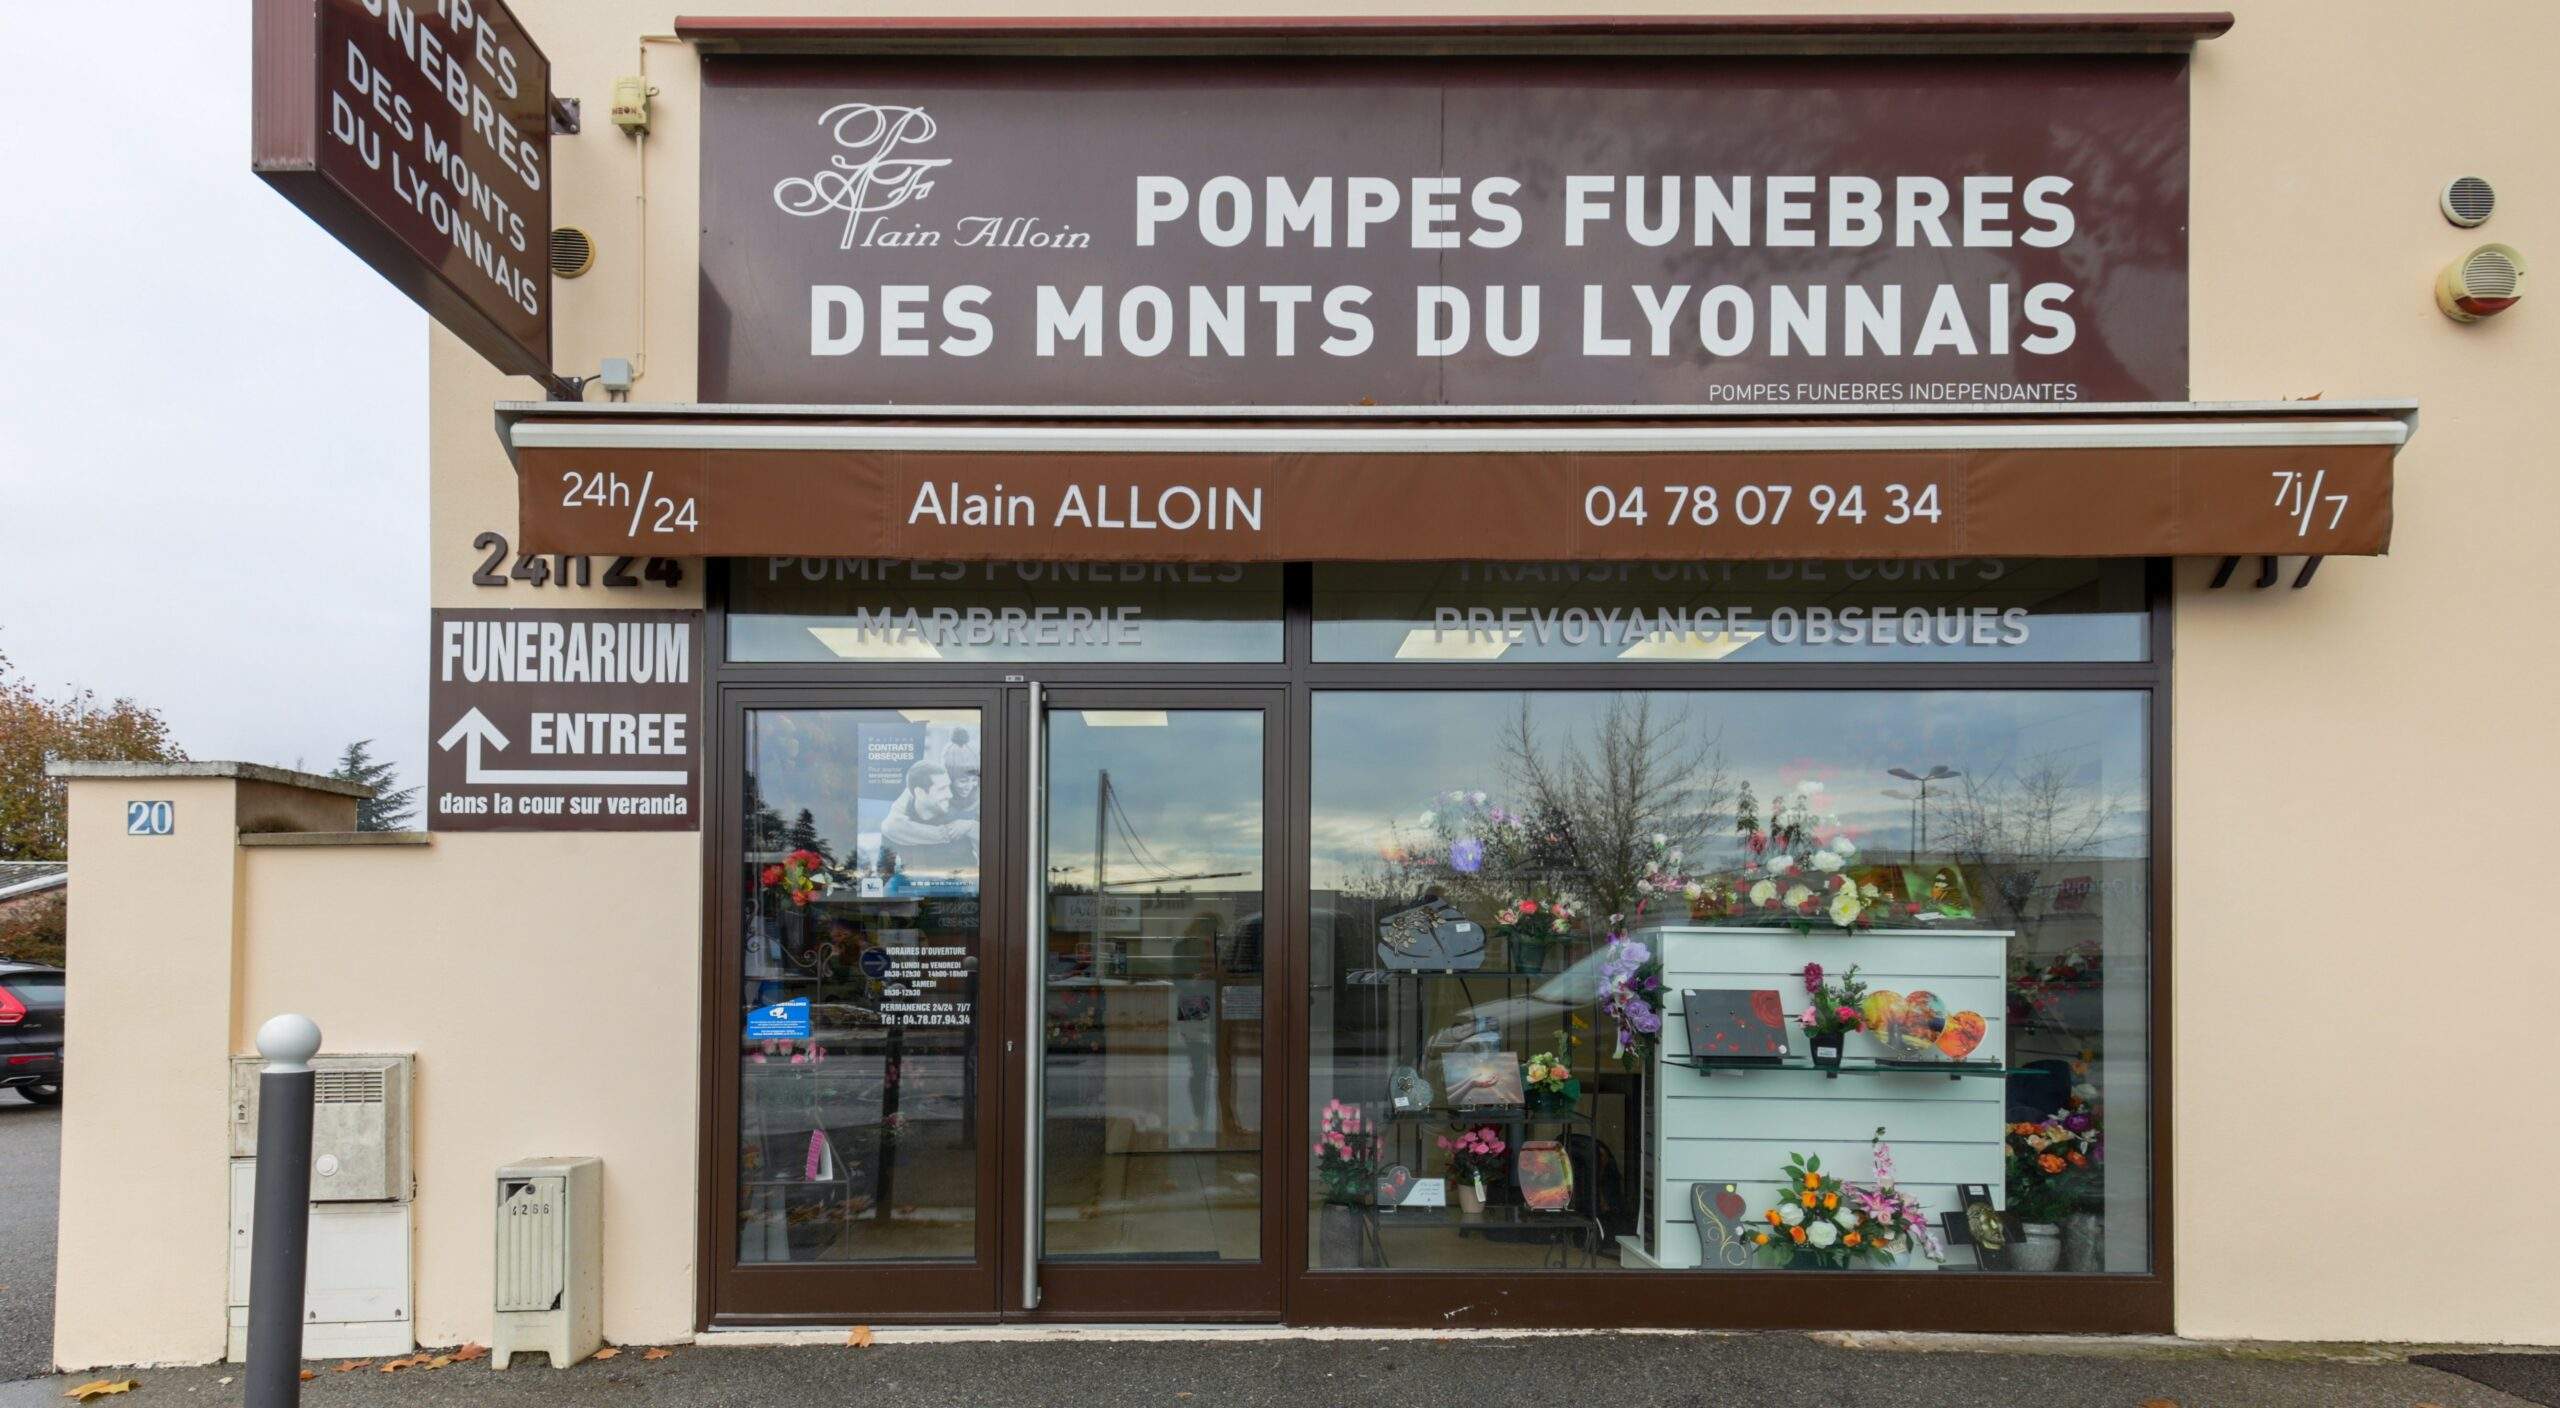 Photo 1 de Pompes Funèbres des Monts du Lyonnais Alain ALLOIN